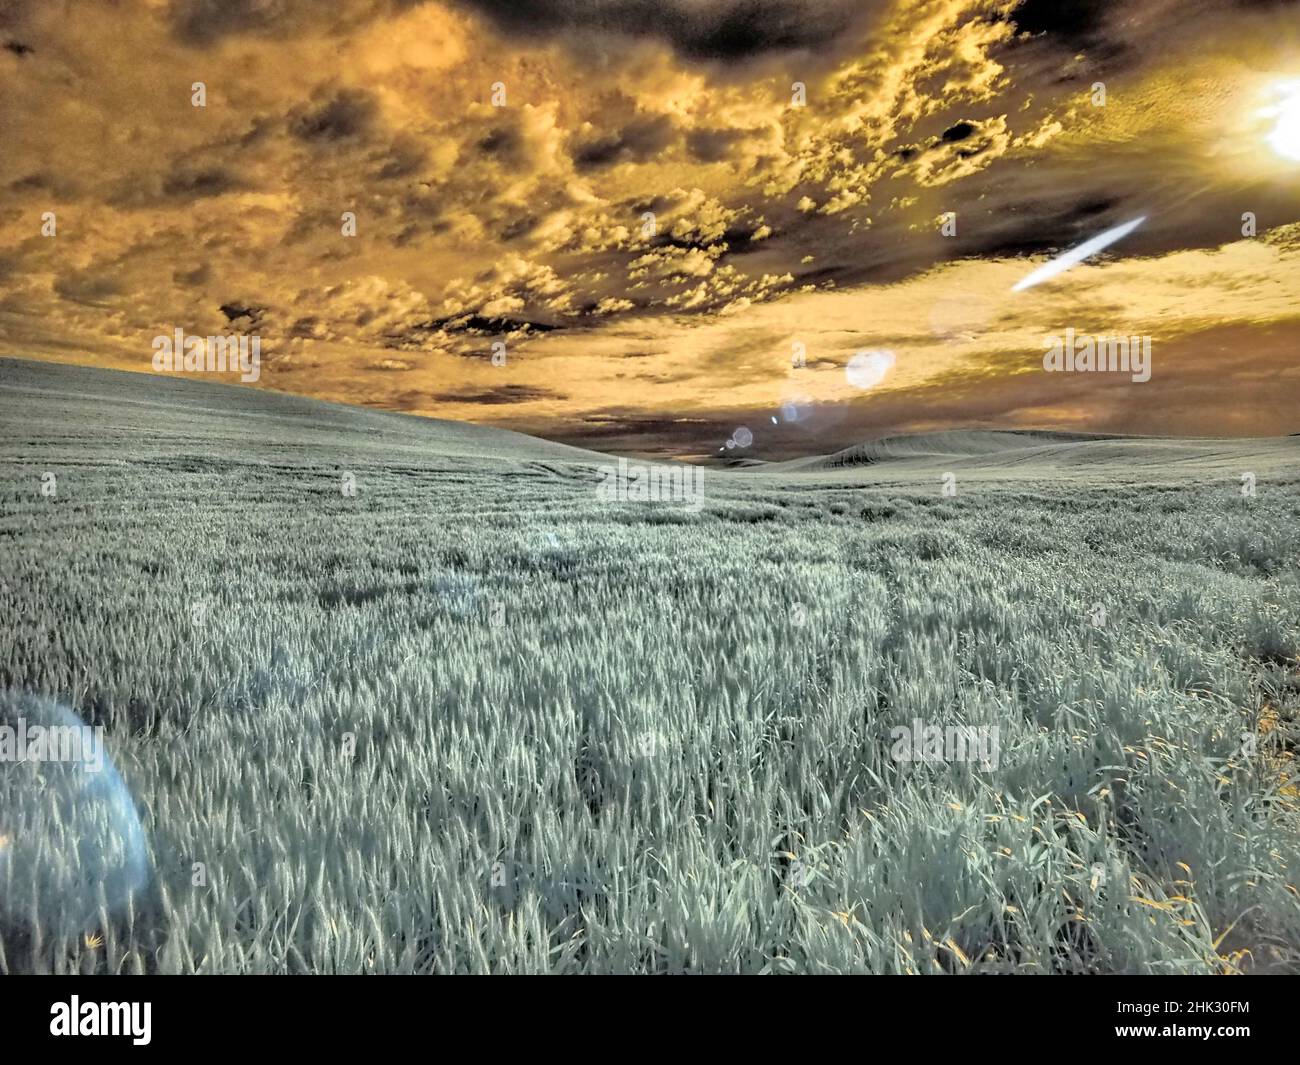 USA, Washington State, Palouse. wheat field and clouds Stock Photo